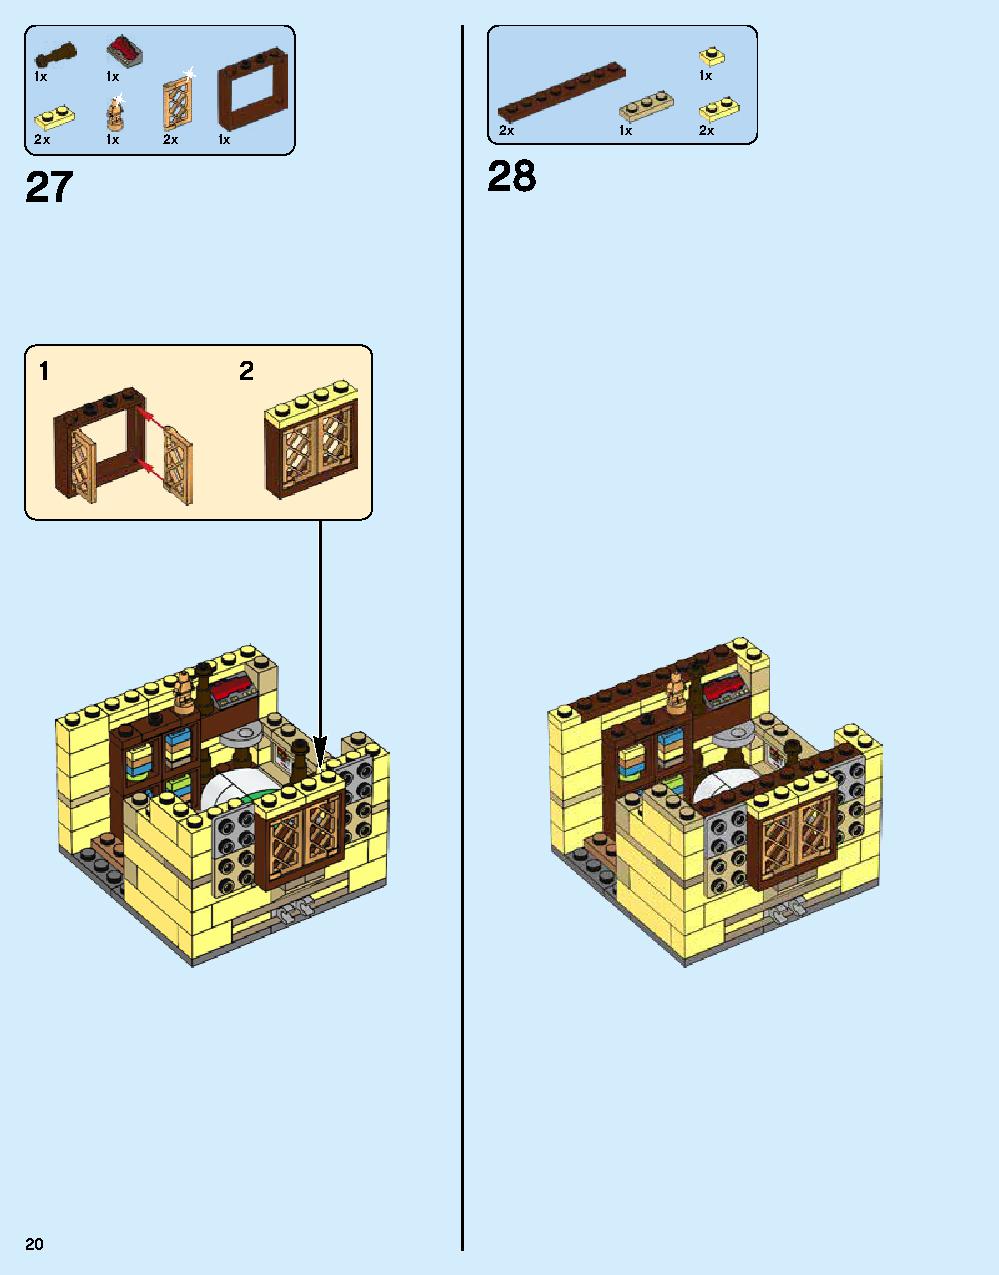 ニンジャゴー シティ 70620 レゴの商品情報 レゴの説明書・組立方法 20 page